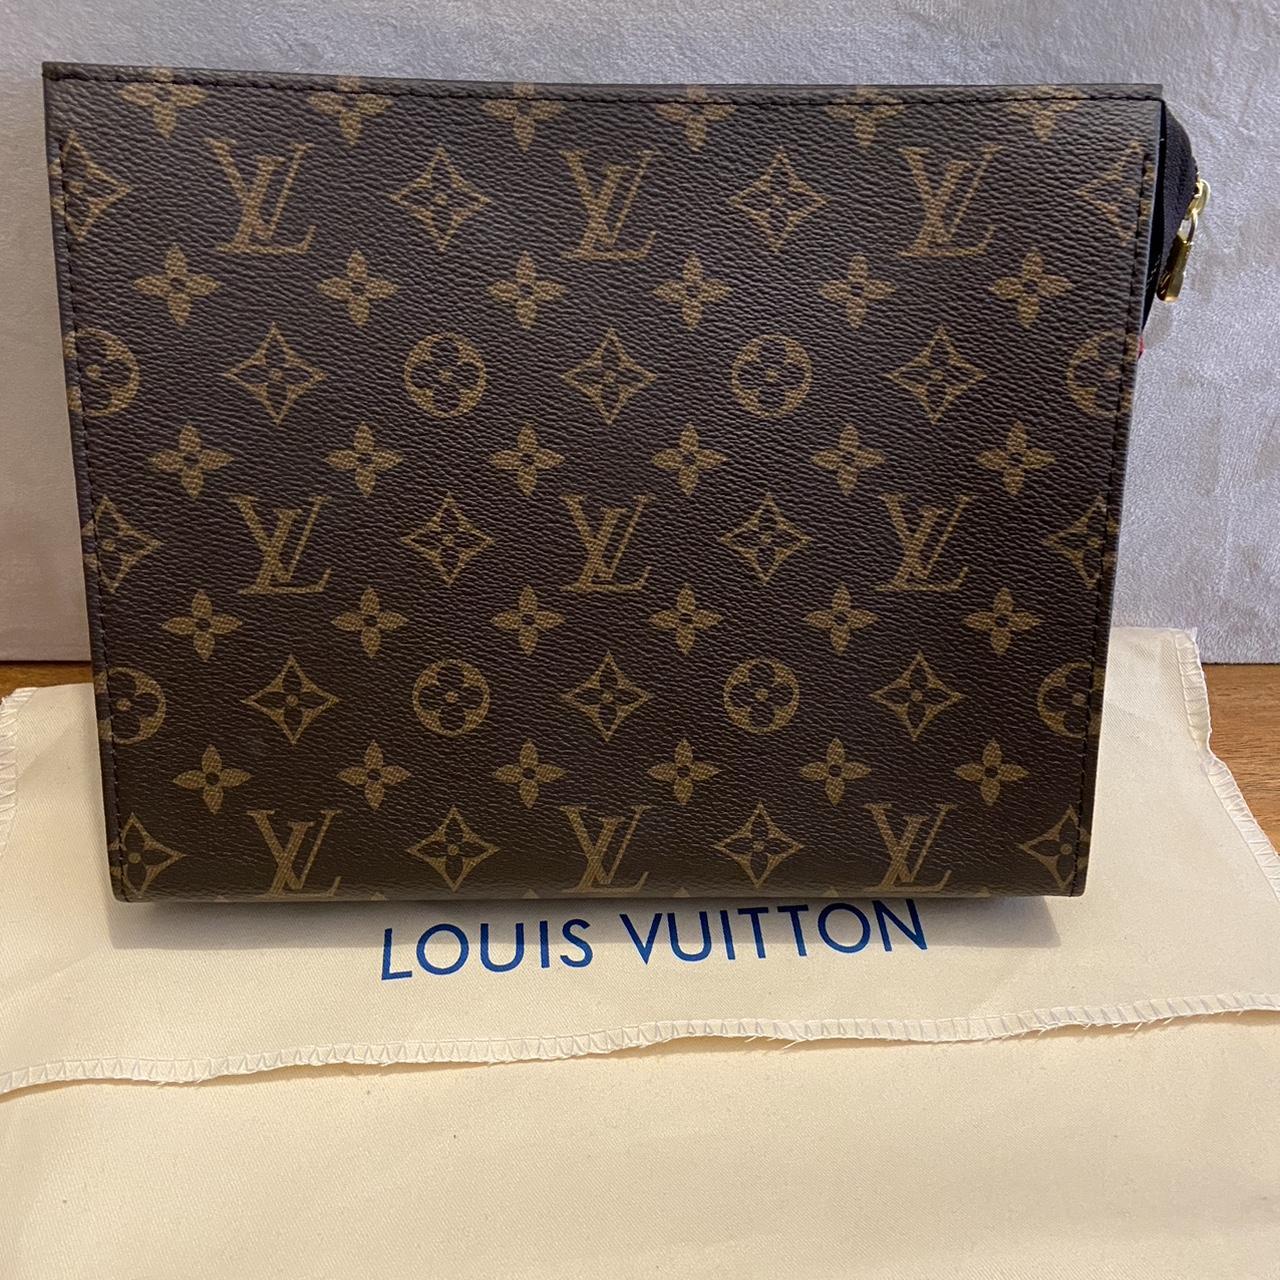 Louis Vuitton Toilette Toiletry Bag Brand new Comes... - Depop